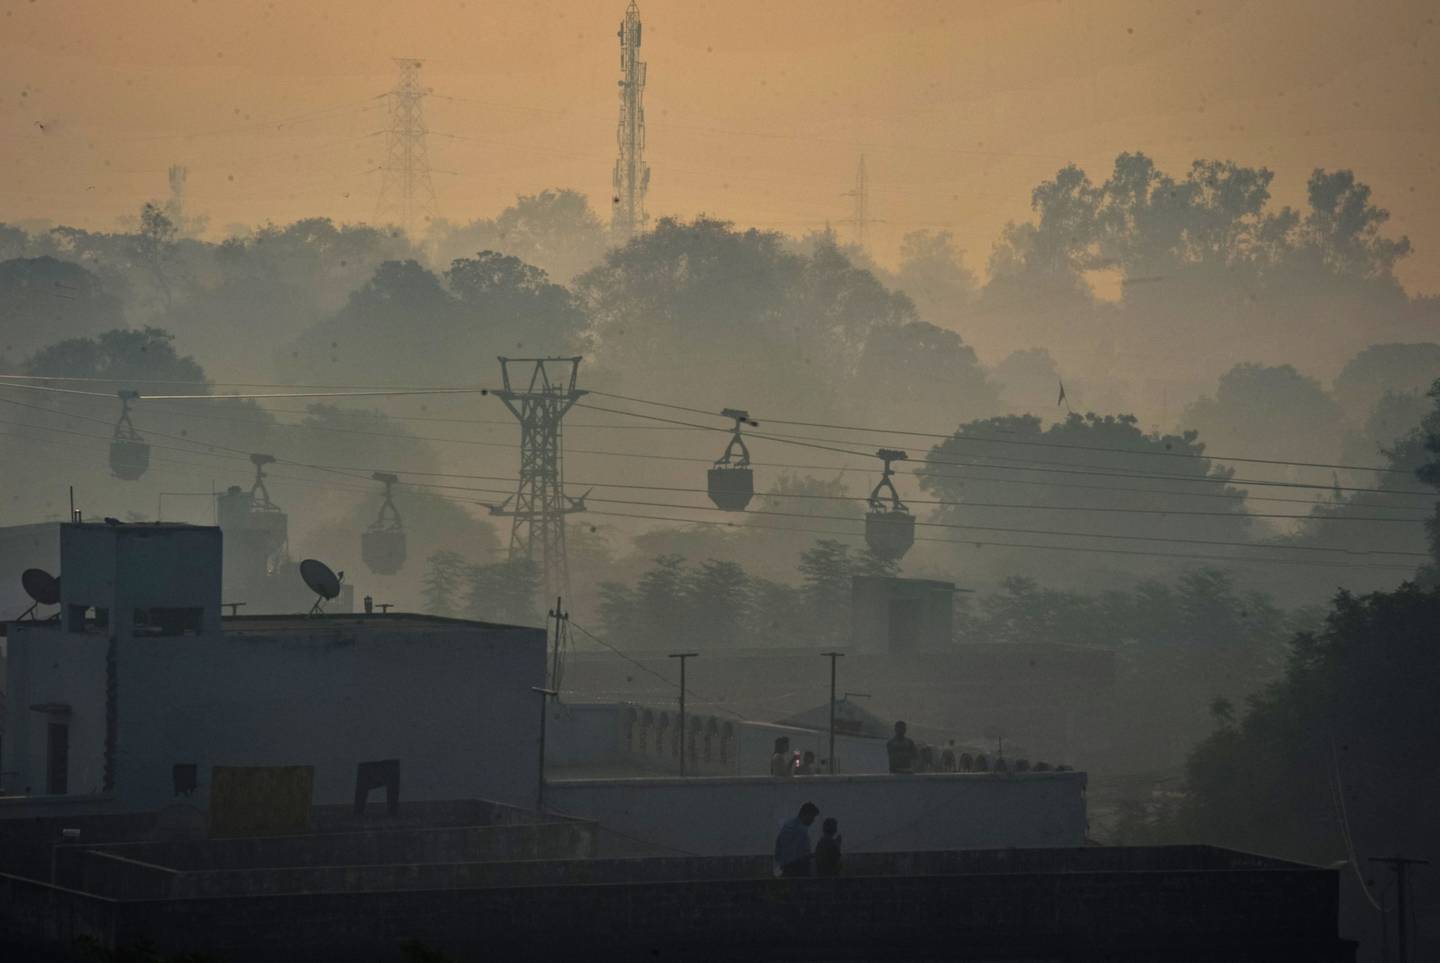 Una línea de carros de cable transporta carbón desde una mina a las centrales térmicas en una mañana de smog el 23 de noviembre de 2021 en Sonbhadra, Uttar Pradesh, India.